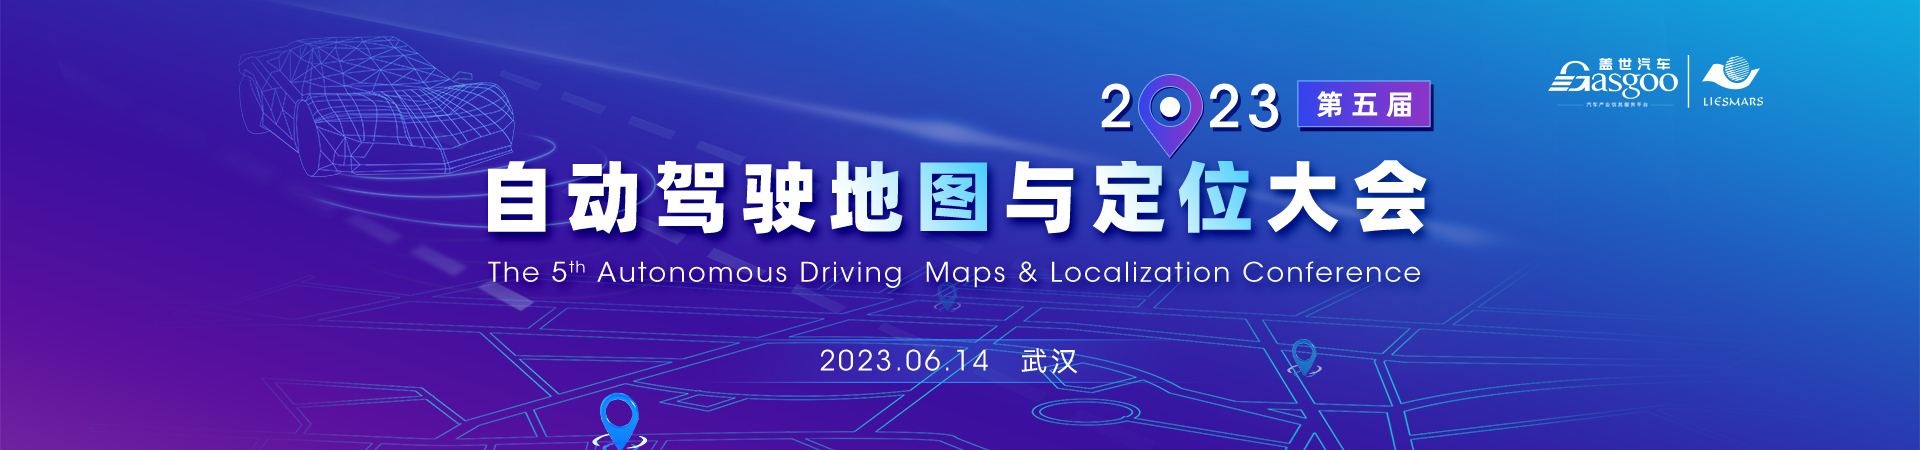 盖世汽车2023第五届自动驾驶地图与定位大会